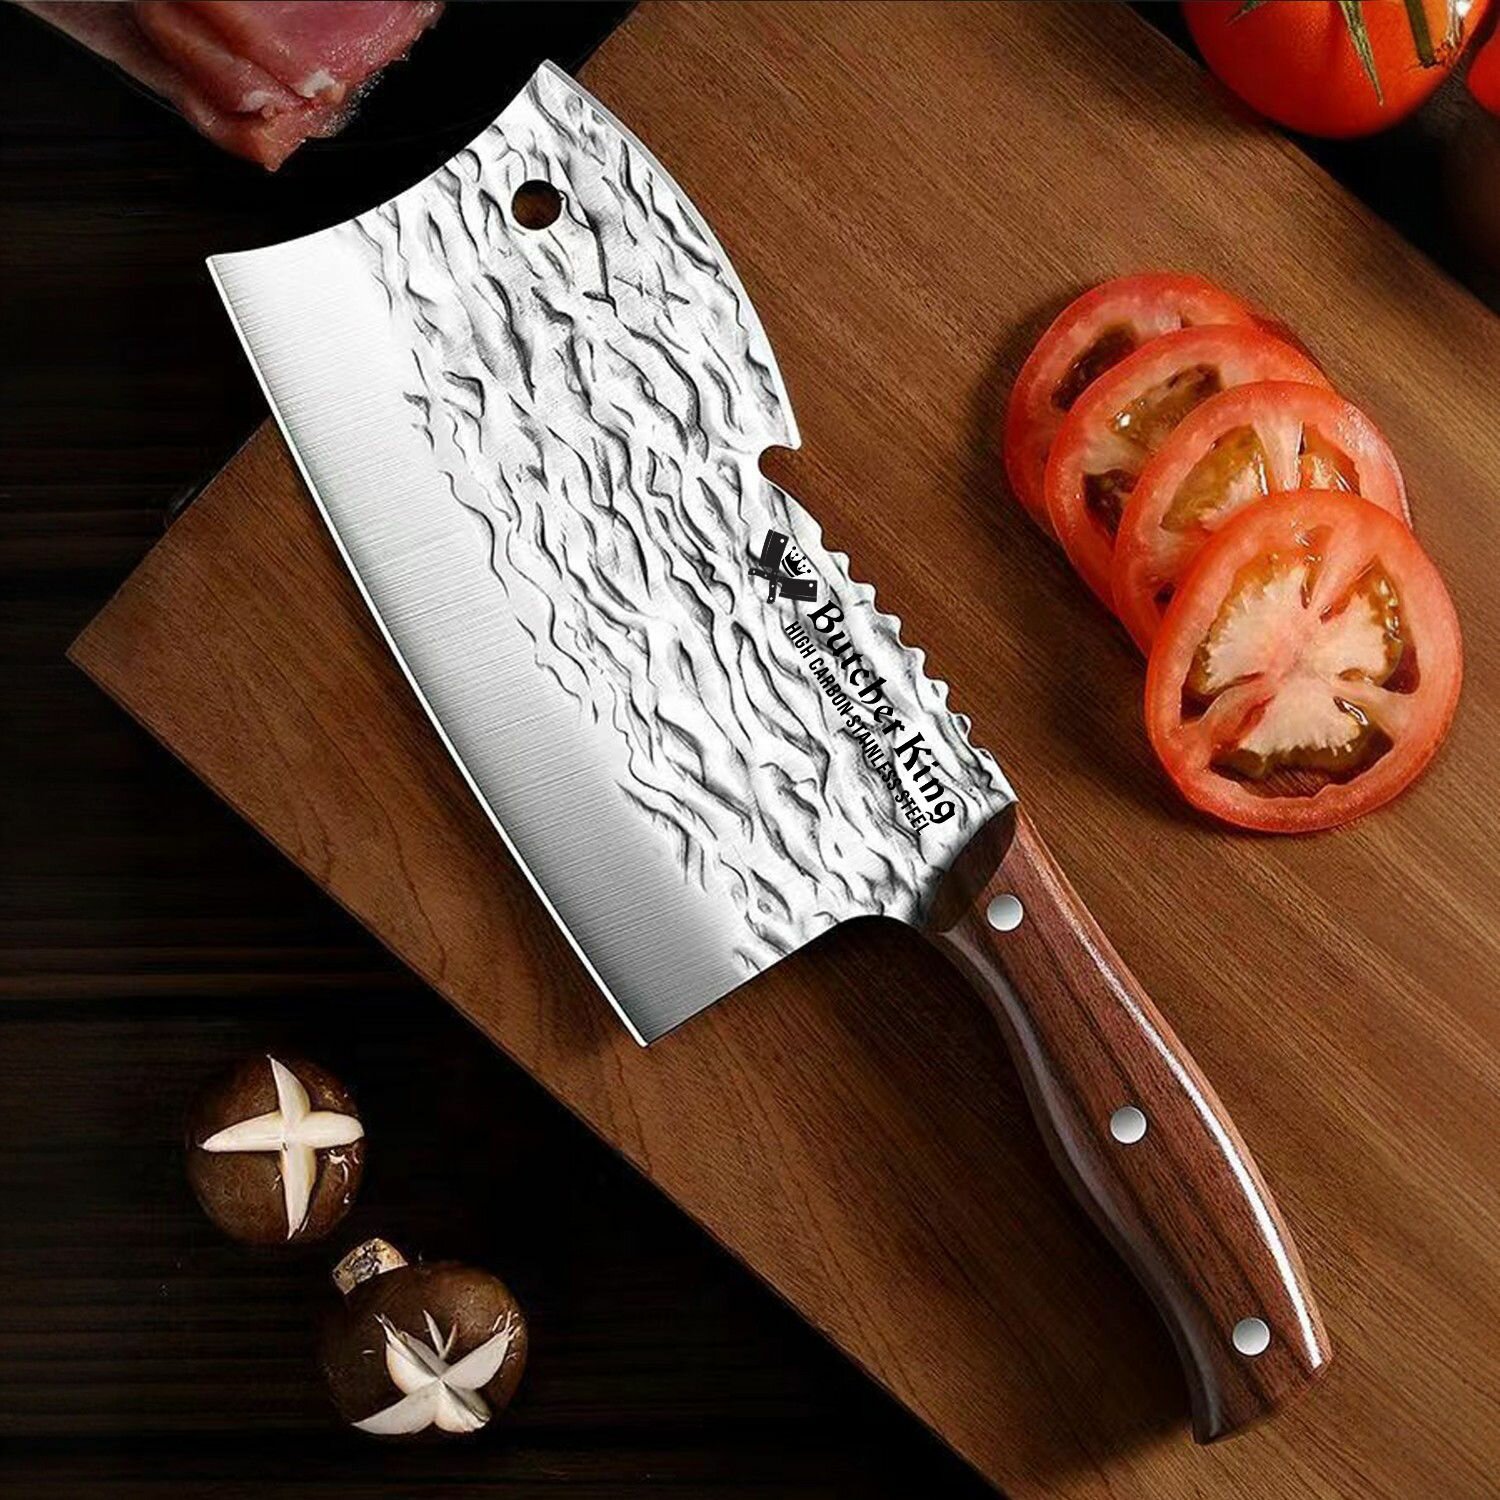 Butcher King / Многофункциональный кованый кухонный нож - топорик. Нож для разделки мяса. Высокоуглеродистая сталь. Длина лезвия 18,5 см